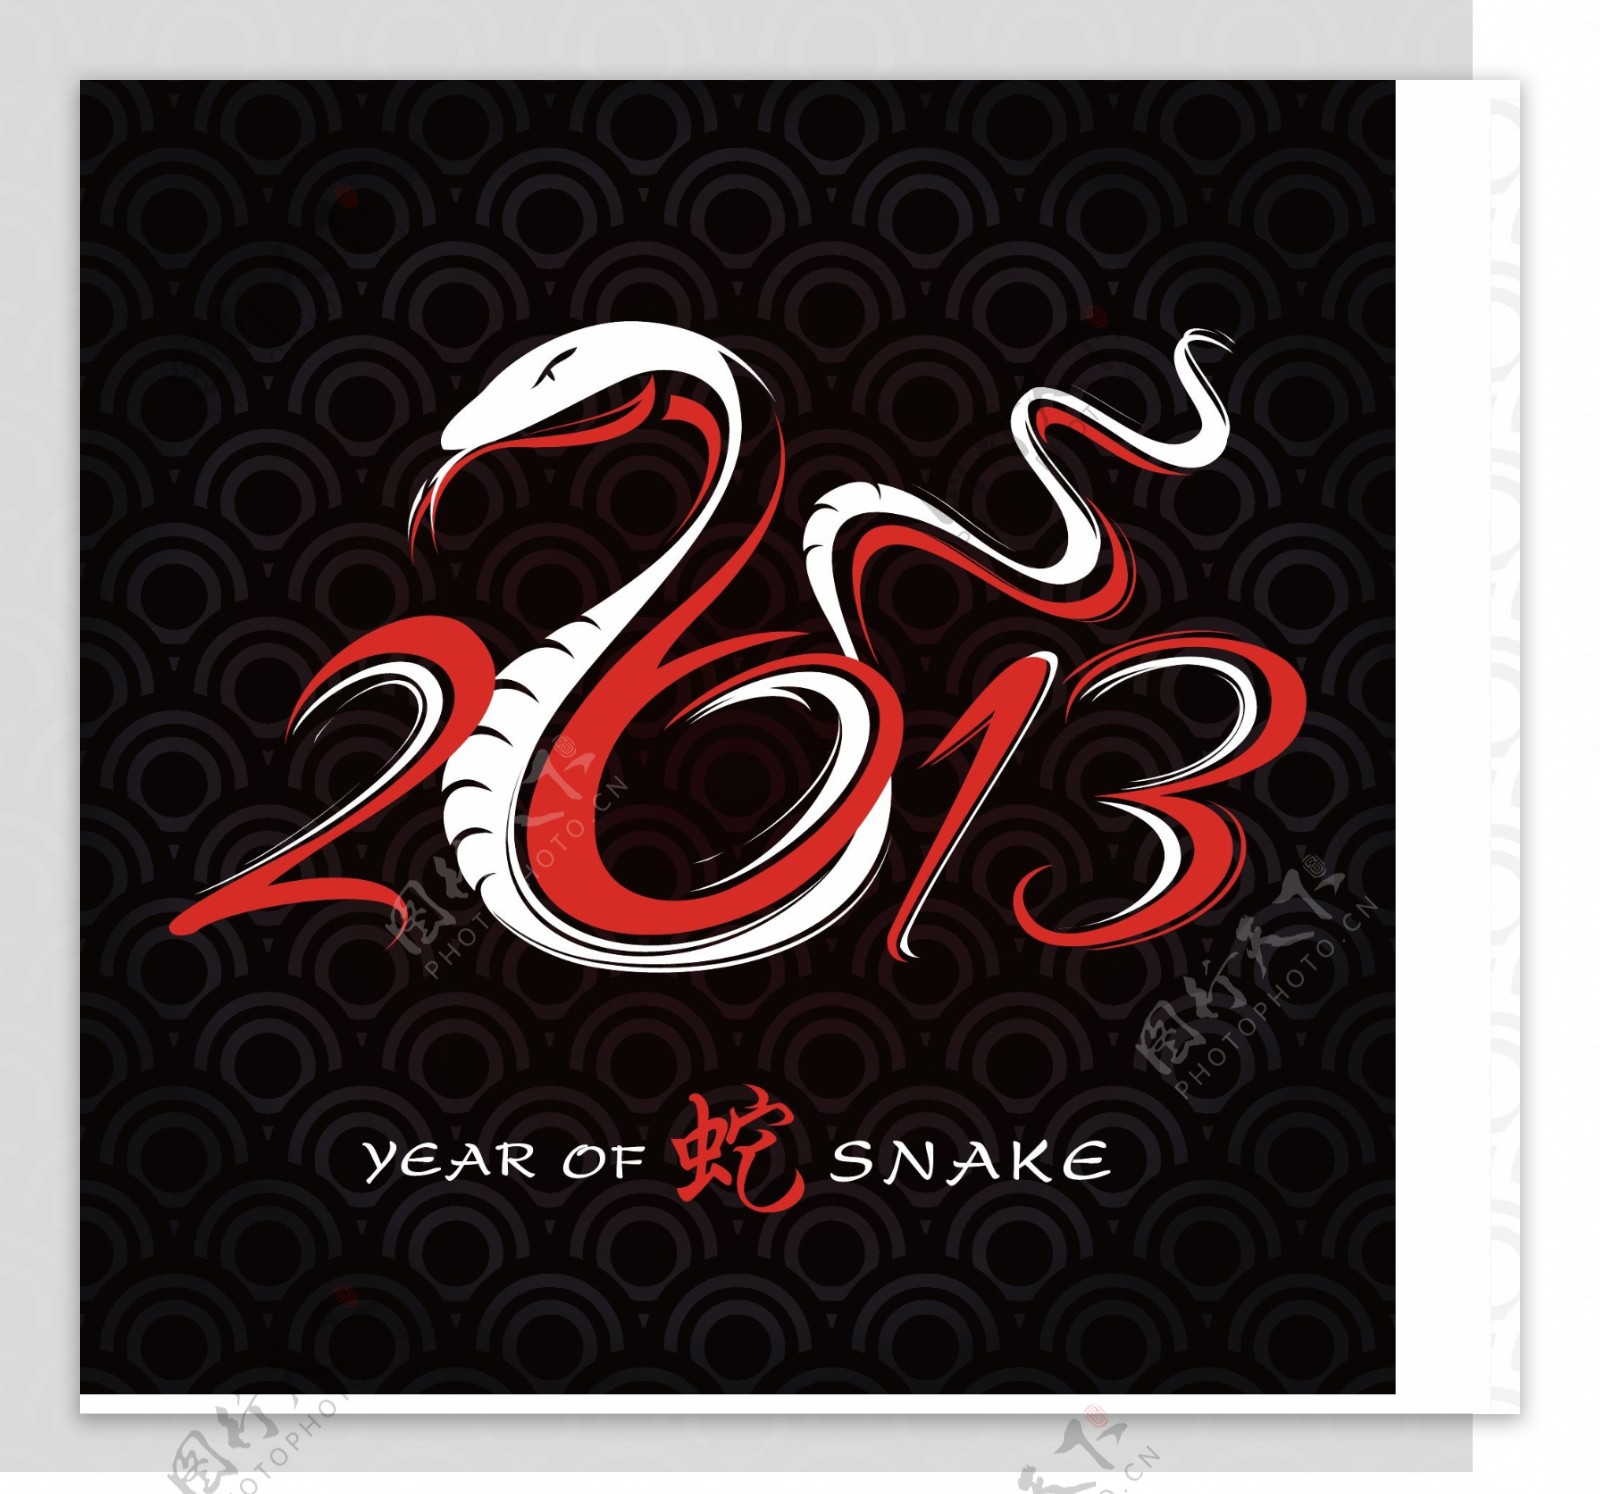 2013年的蛇创意卡片矢量素材